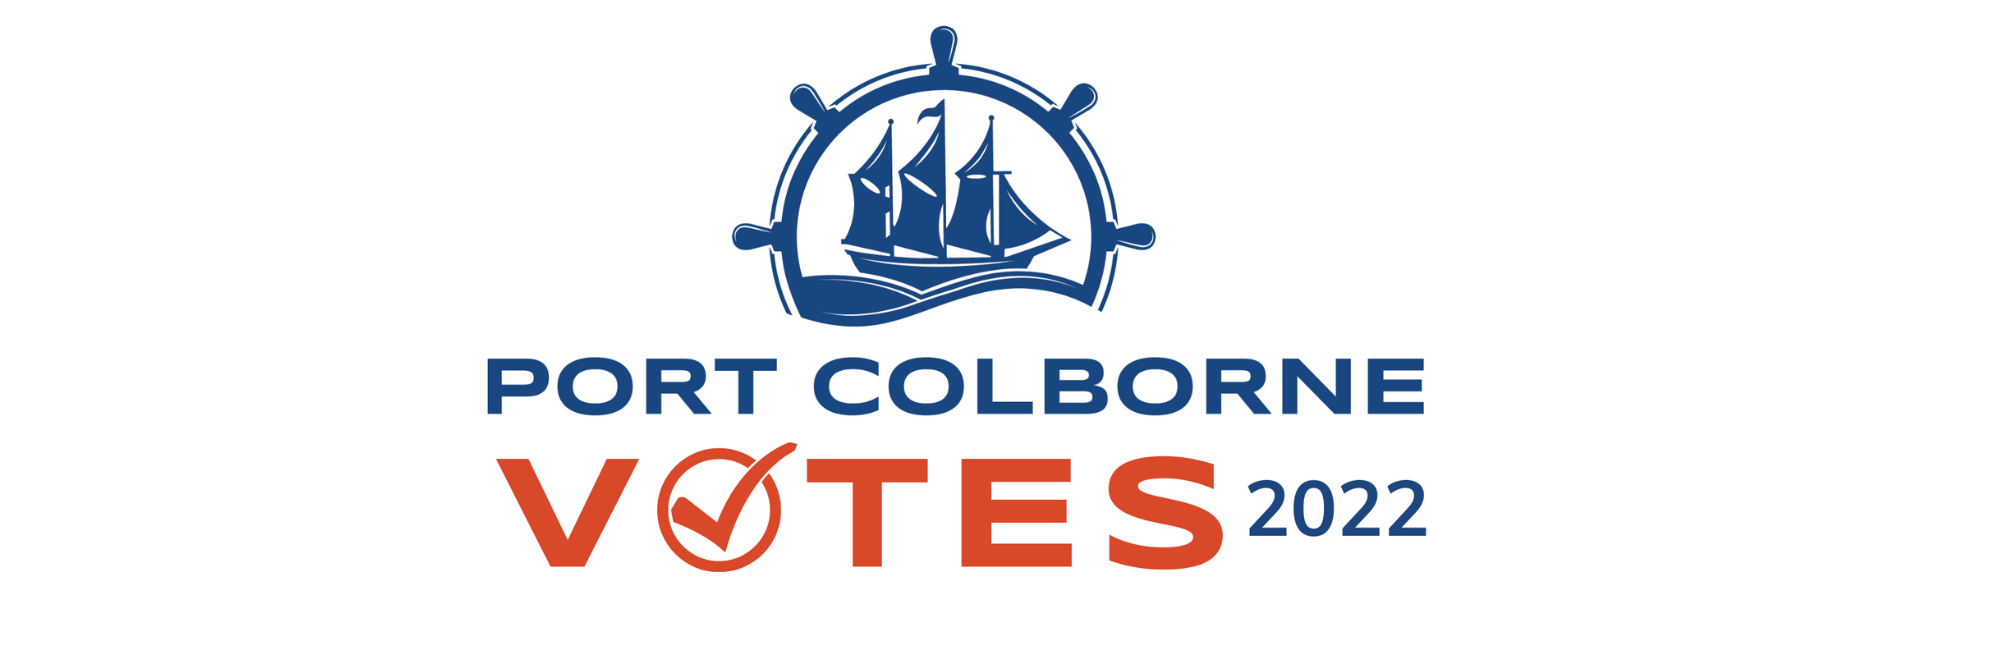 Port Colborne Votes